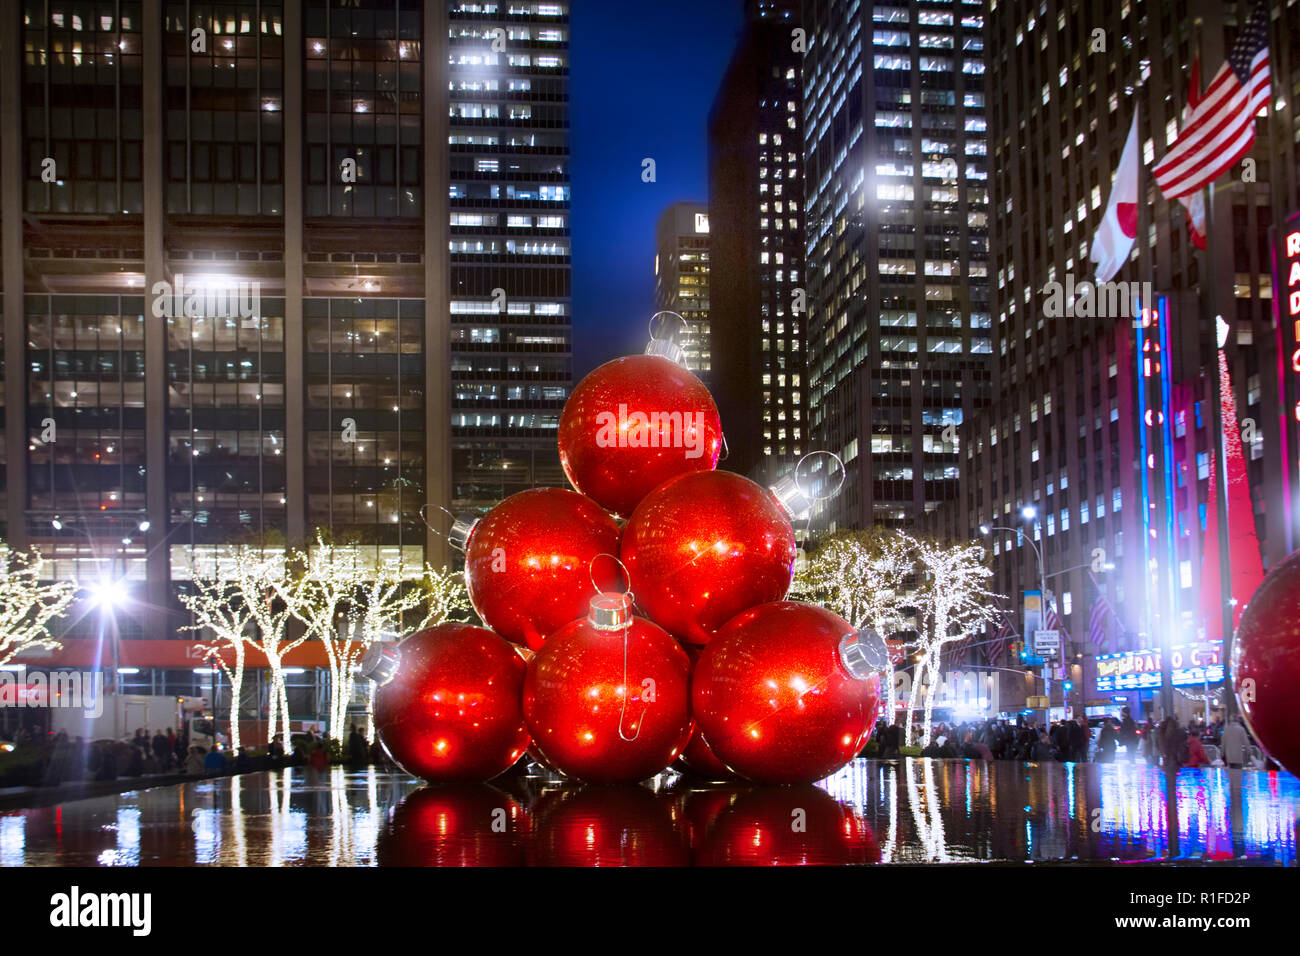 Ornements de Noël géant dans le Rockefeller Center sont l'un des points forts de la saison de vacances dans la ville de New York. Banque D'Images